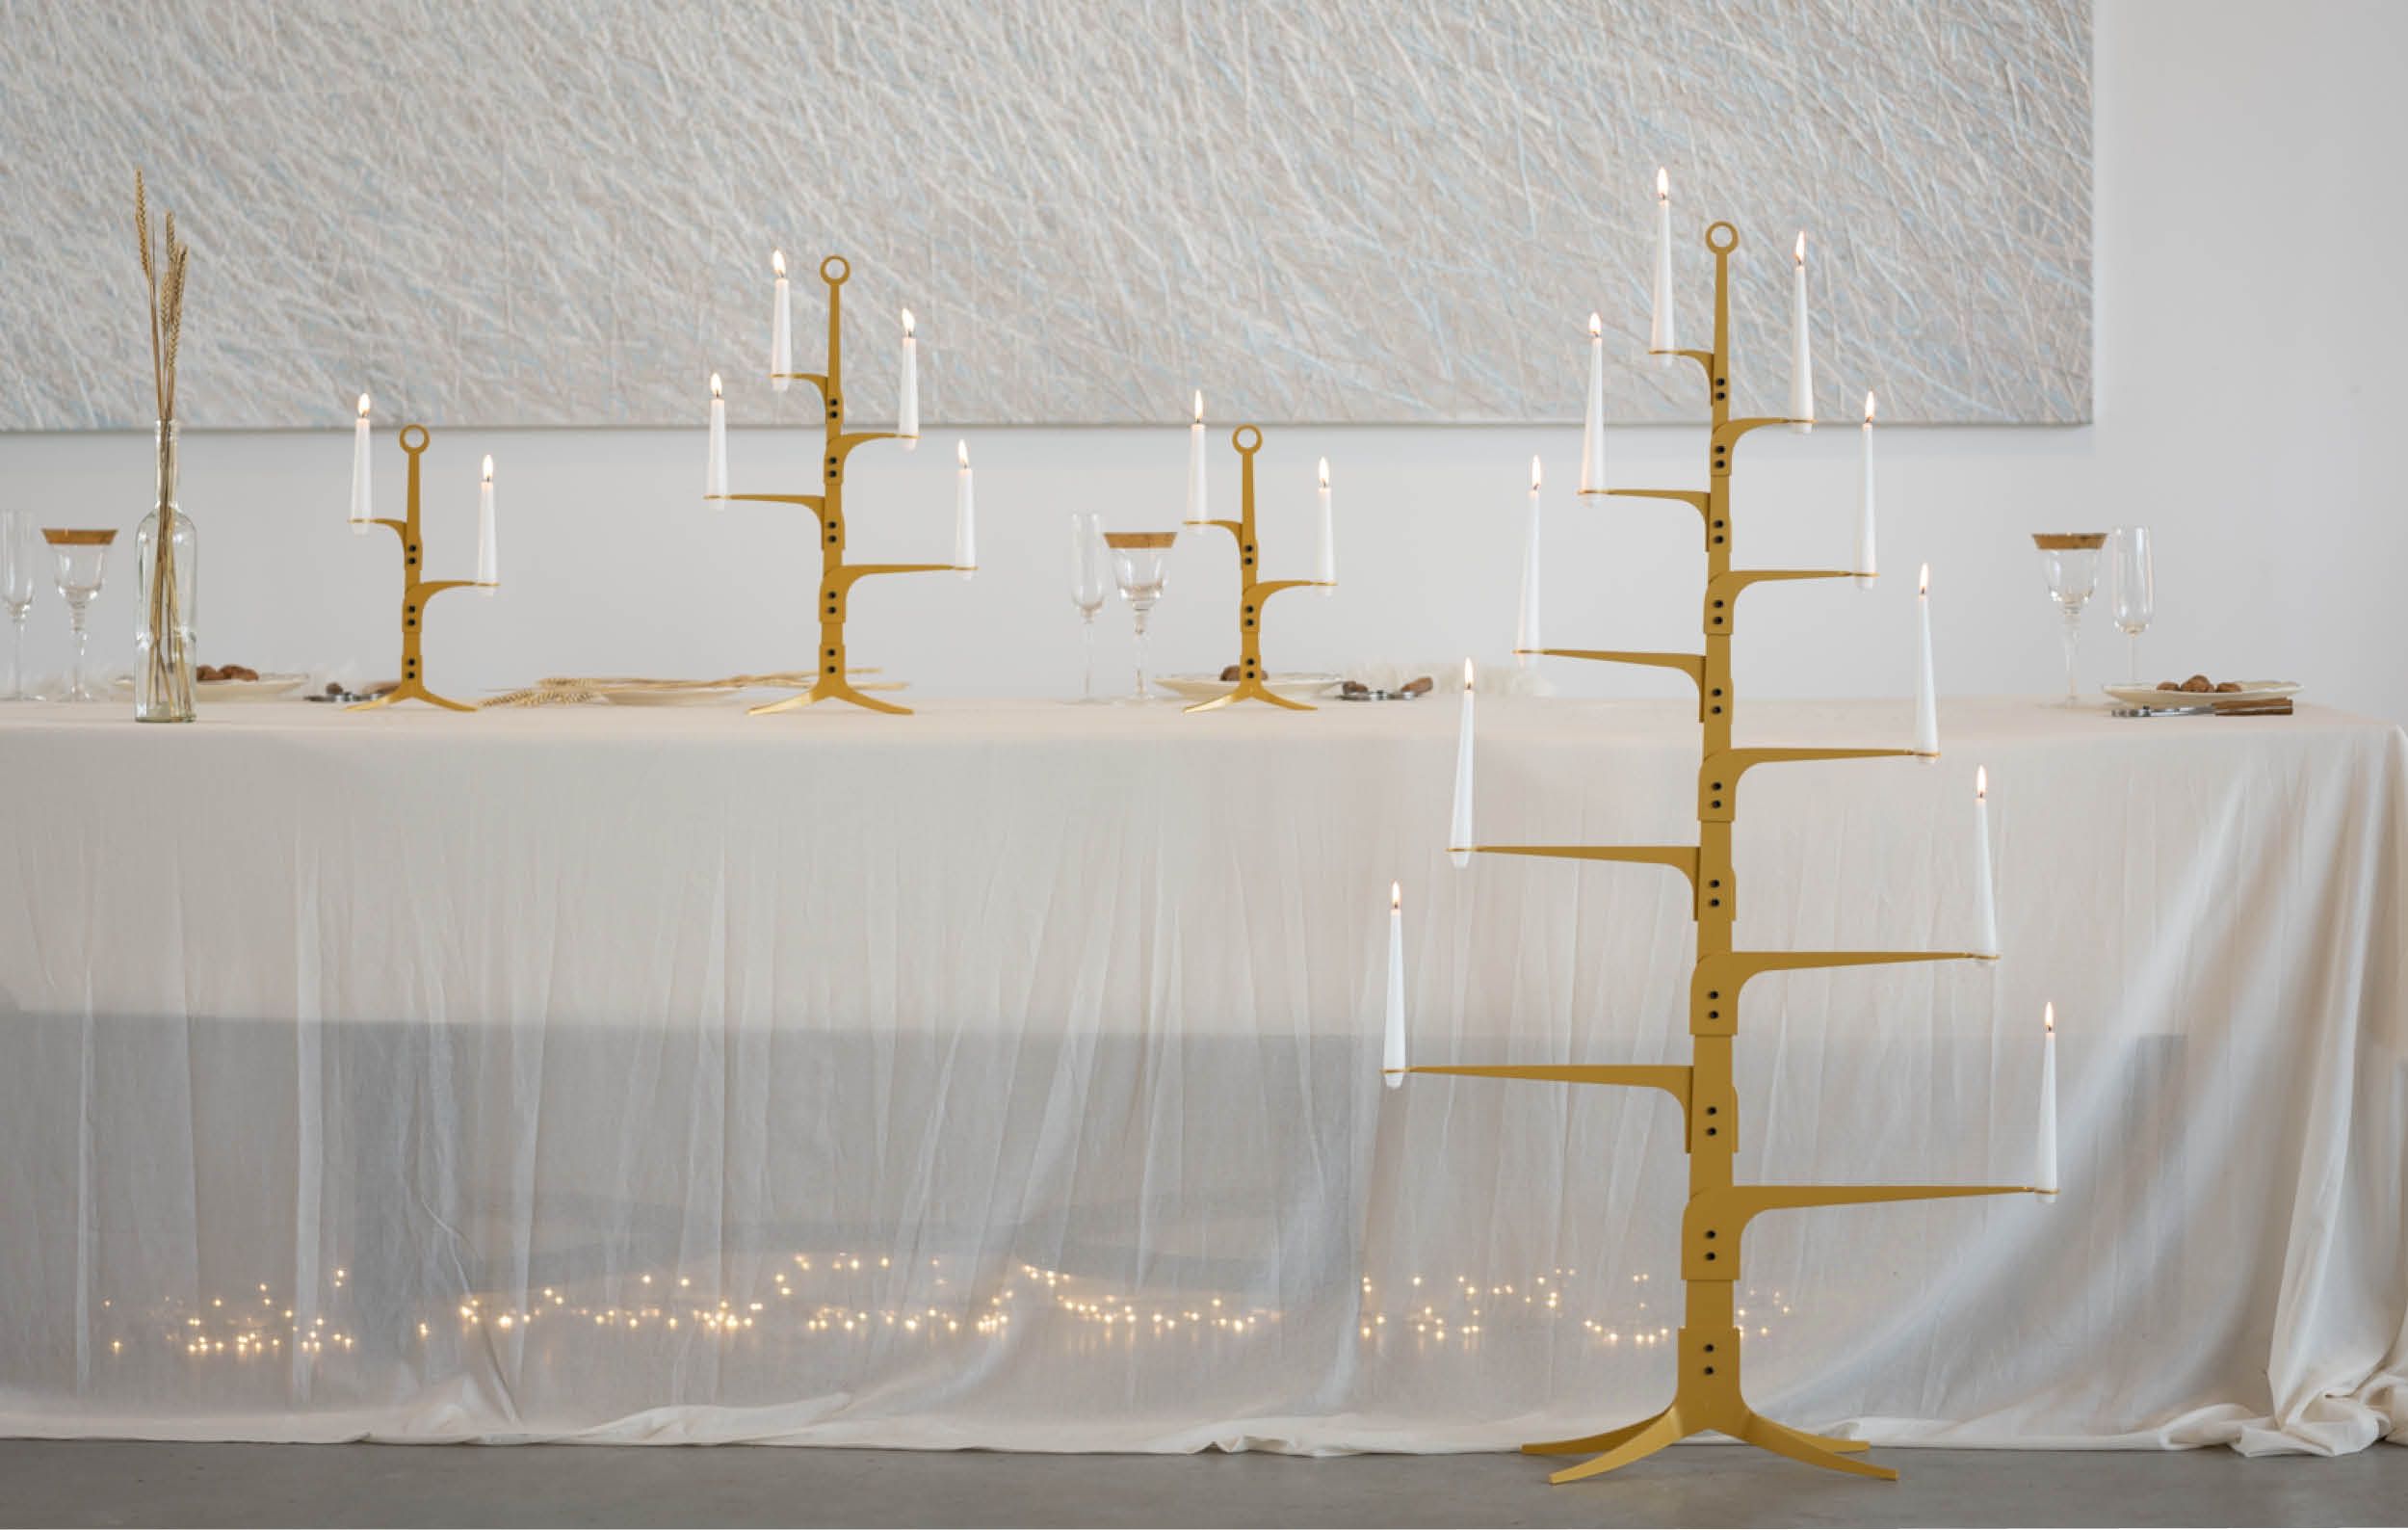 bij ore design in Heeten, dinertafel met wit transparant tafelkleed, kandelaren serie the ore glow op tafel, de kaarsen branden, tafel gedekt met glazen en bordjes met noten en de notenkrakers.